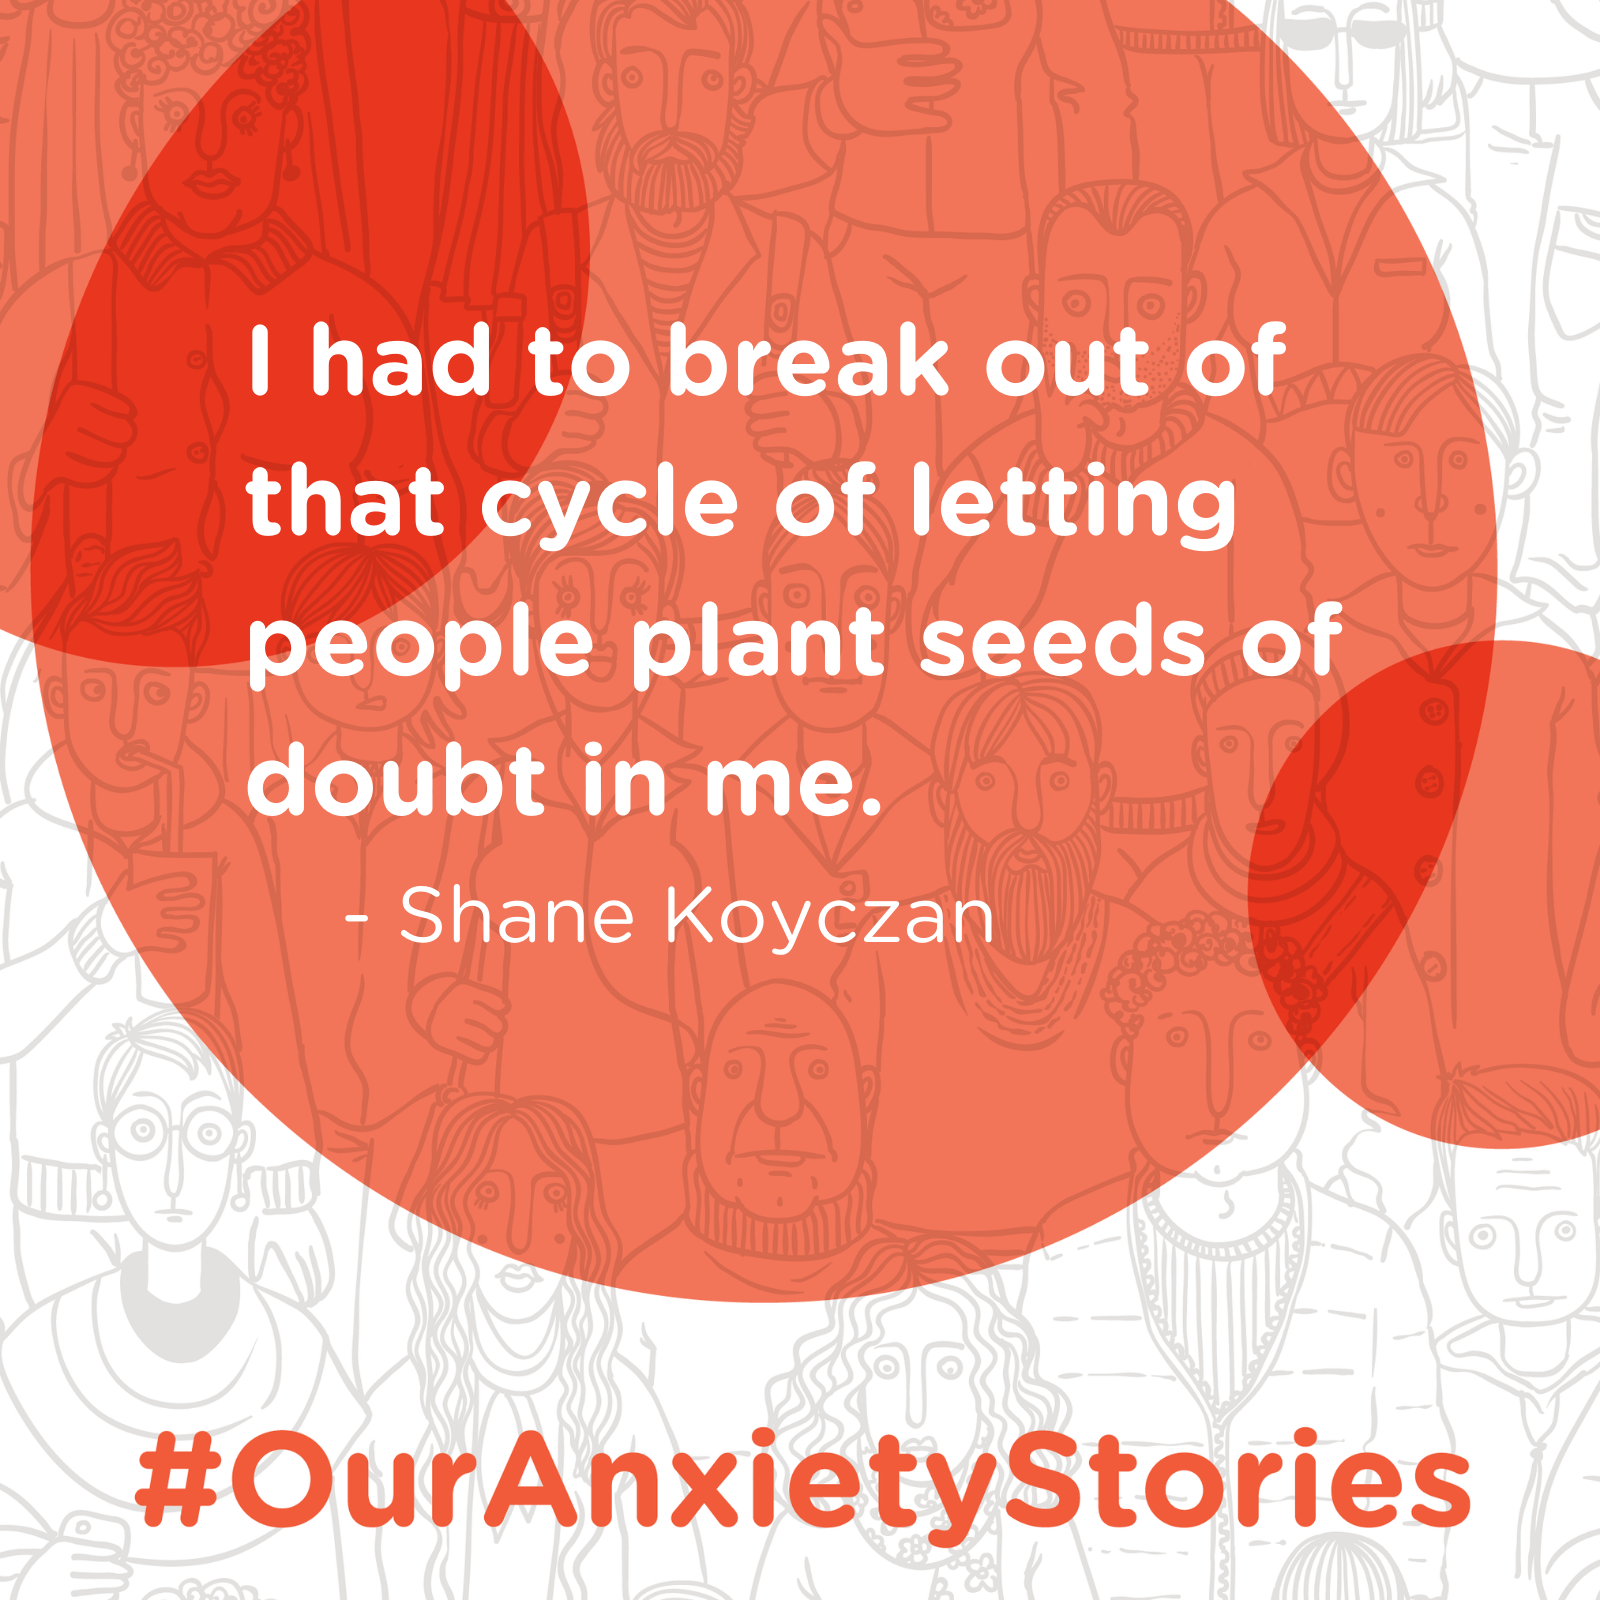 Beyond the Bullies: Shane Koyczan’s Journey with Anxiety